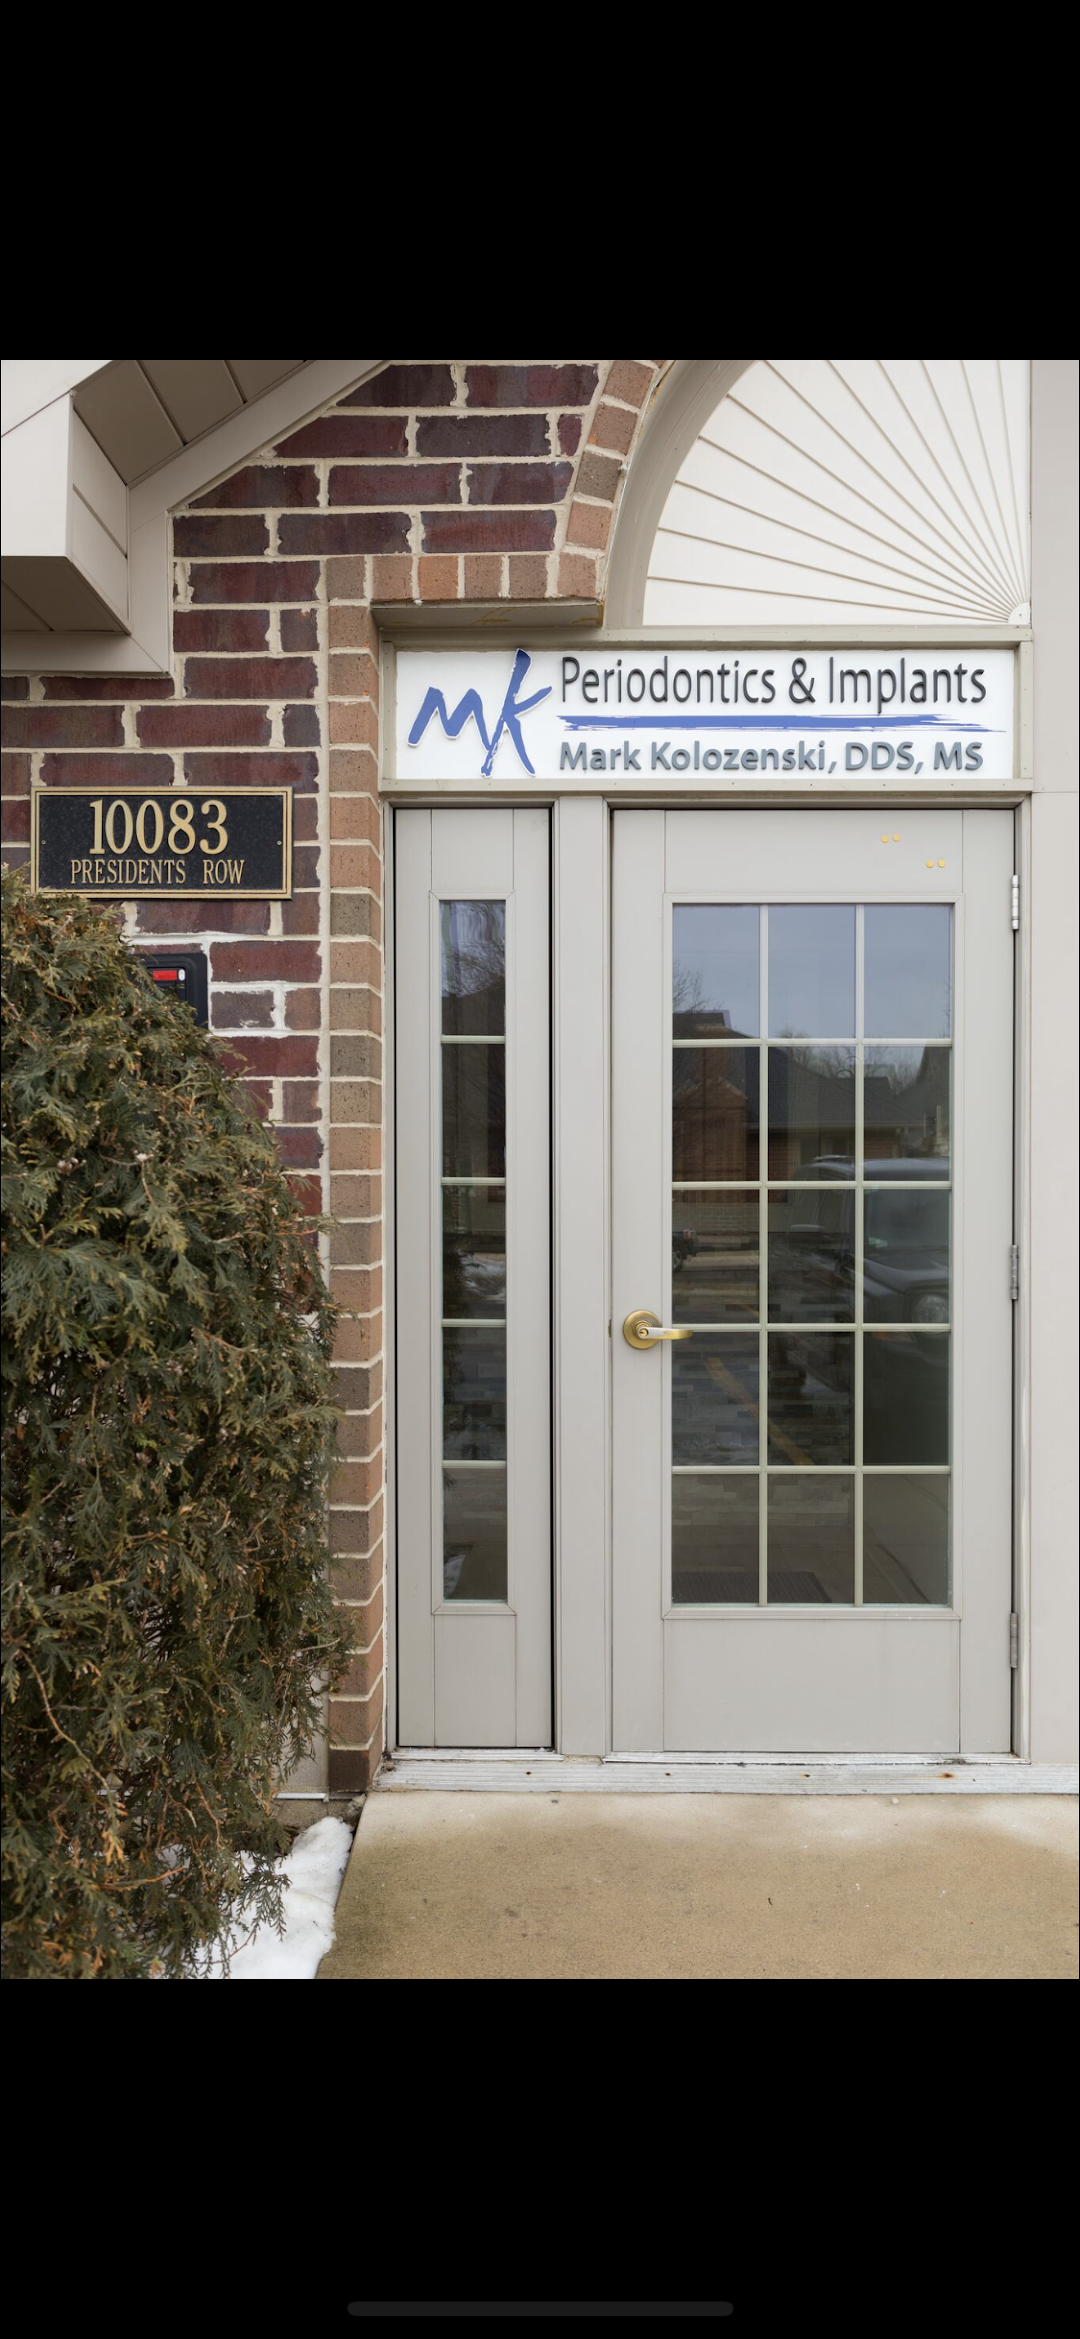 MK Periodontics and Implants